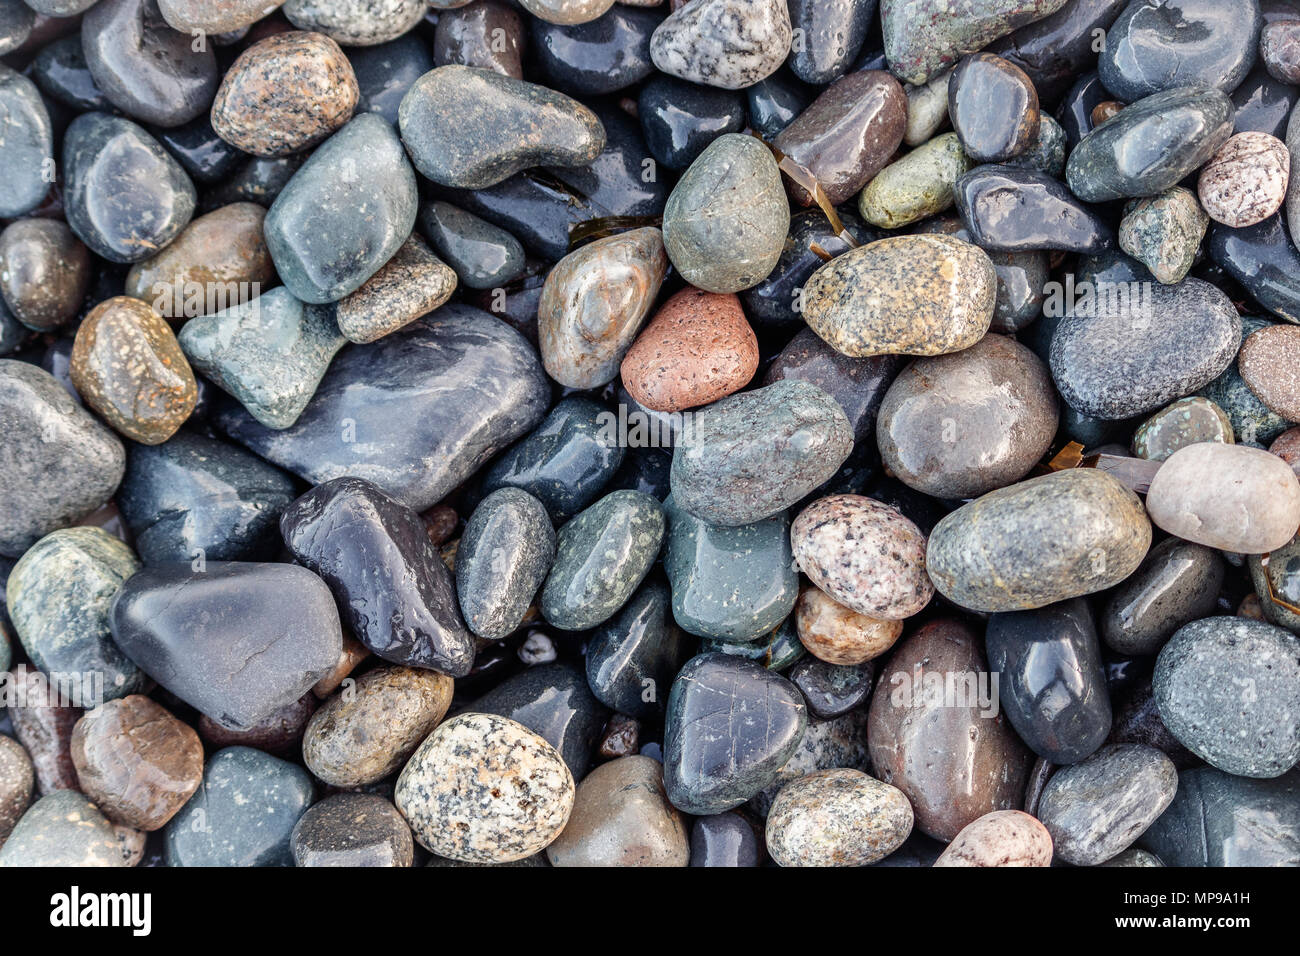 Lucidate per fluidità da onde e acqua, una ricca e variegata gamma di pietre su una spiaggia costiere sono lucide e bagnata dalla marea in uscita. Foto Stock